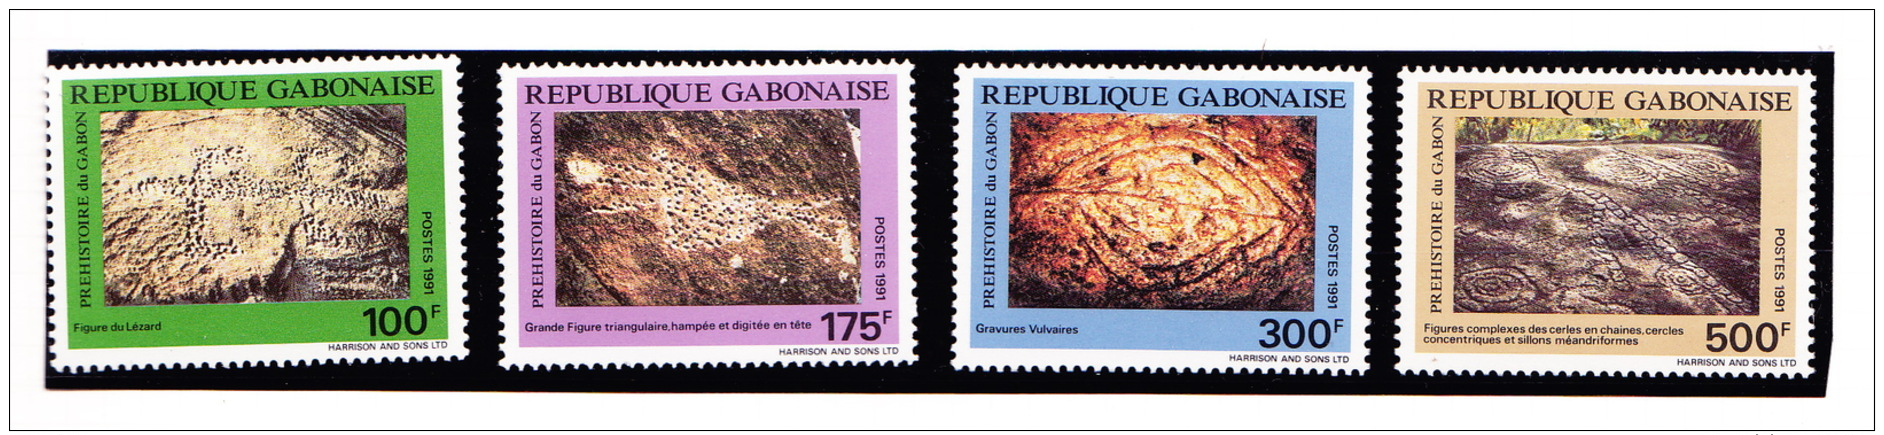 Gabon1991 Arte Rupestre - Archeologie